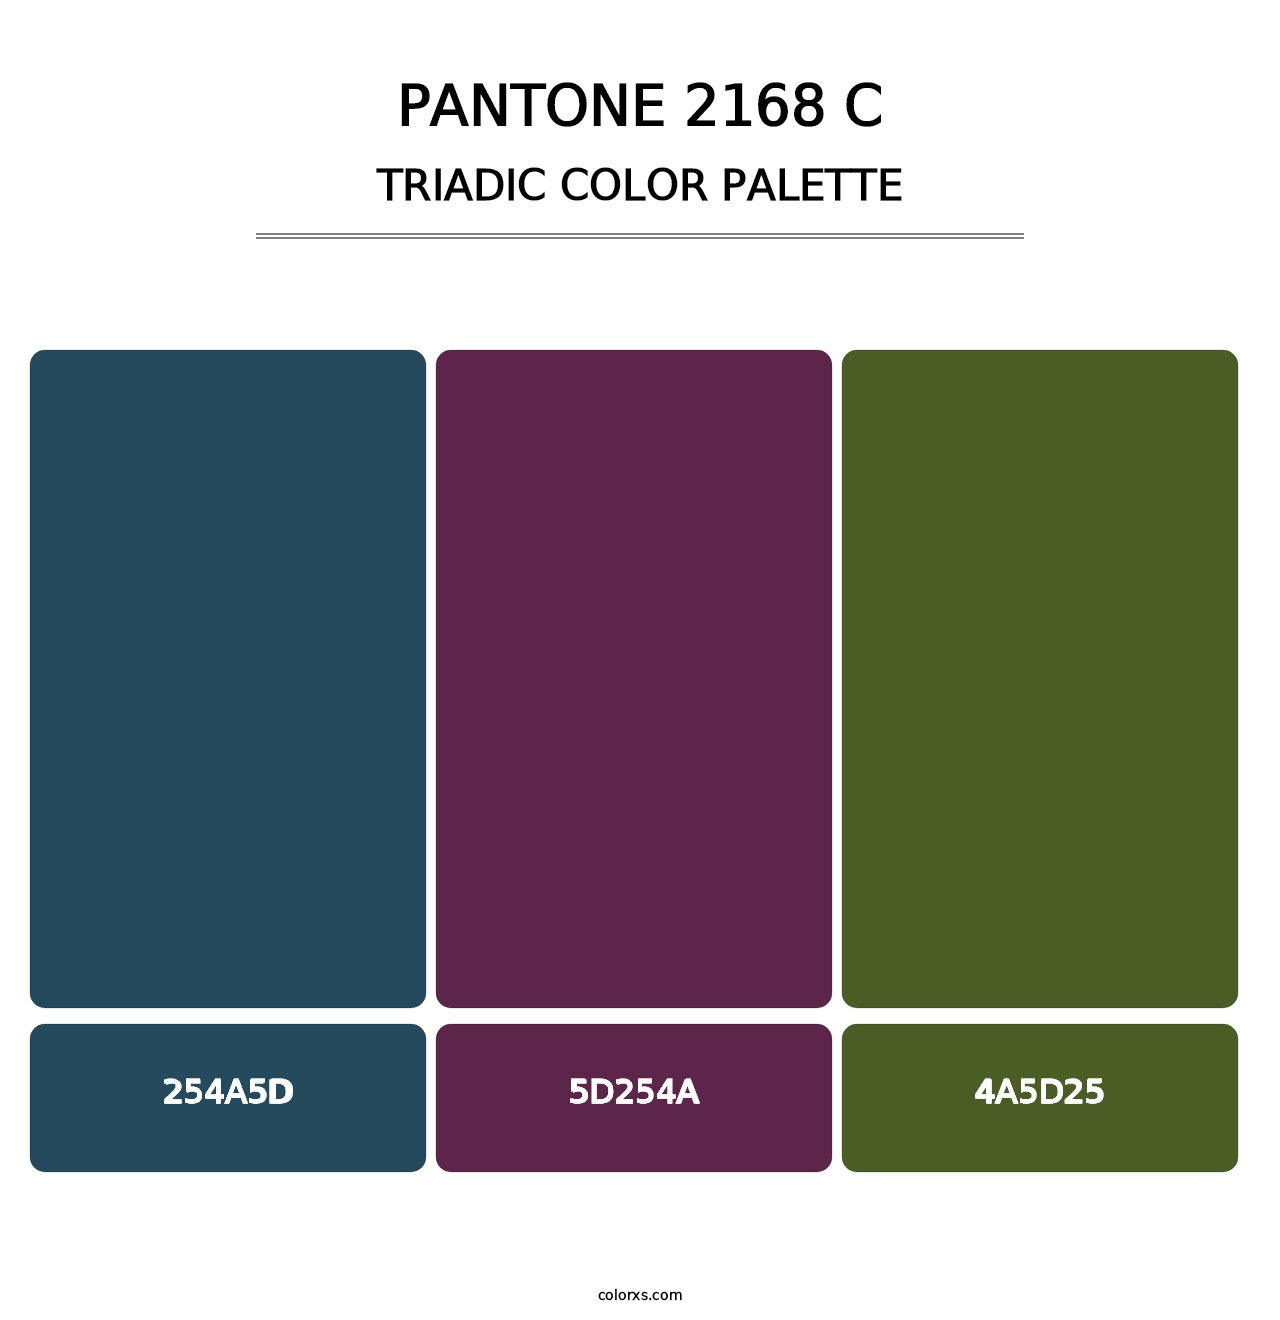 PANTONE 2168 C - Triadic Color Palette